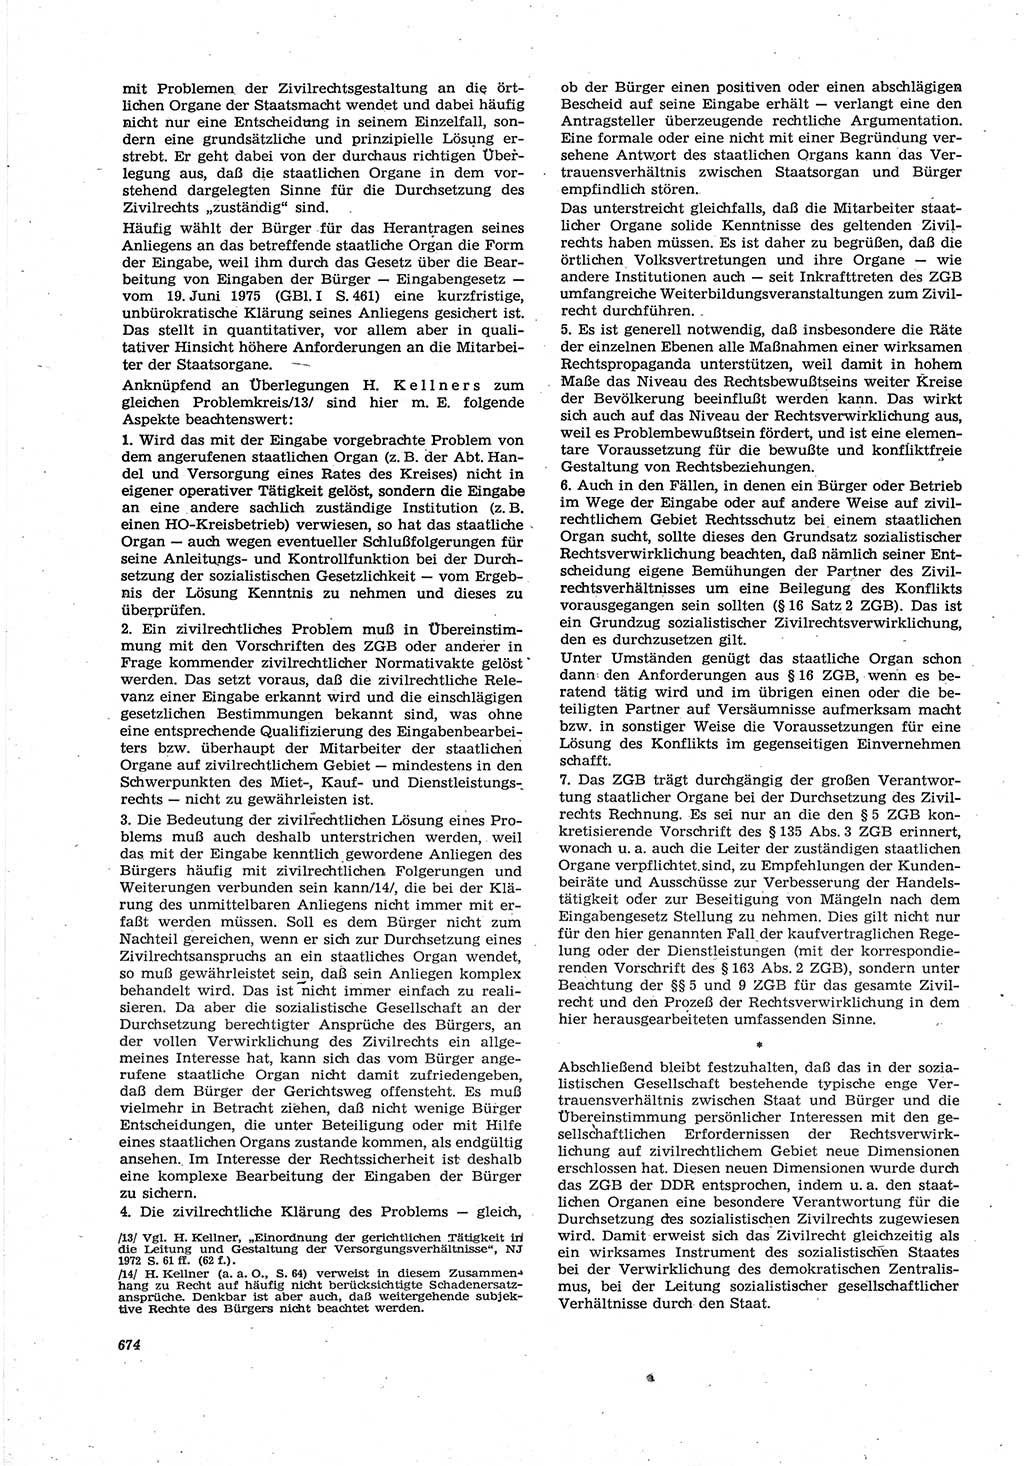 Neue Justiz (NJ), Zeitschrift für Recht und Rechtswissenschaft [Deutsche Demokratische Republik (DDR)], 30. Jahrgang 1976, Seite 674 (NJ DDR 1976, S. 674)